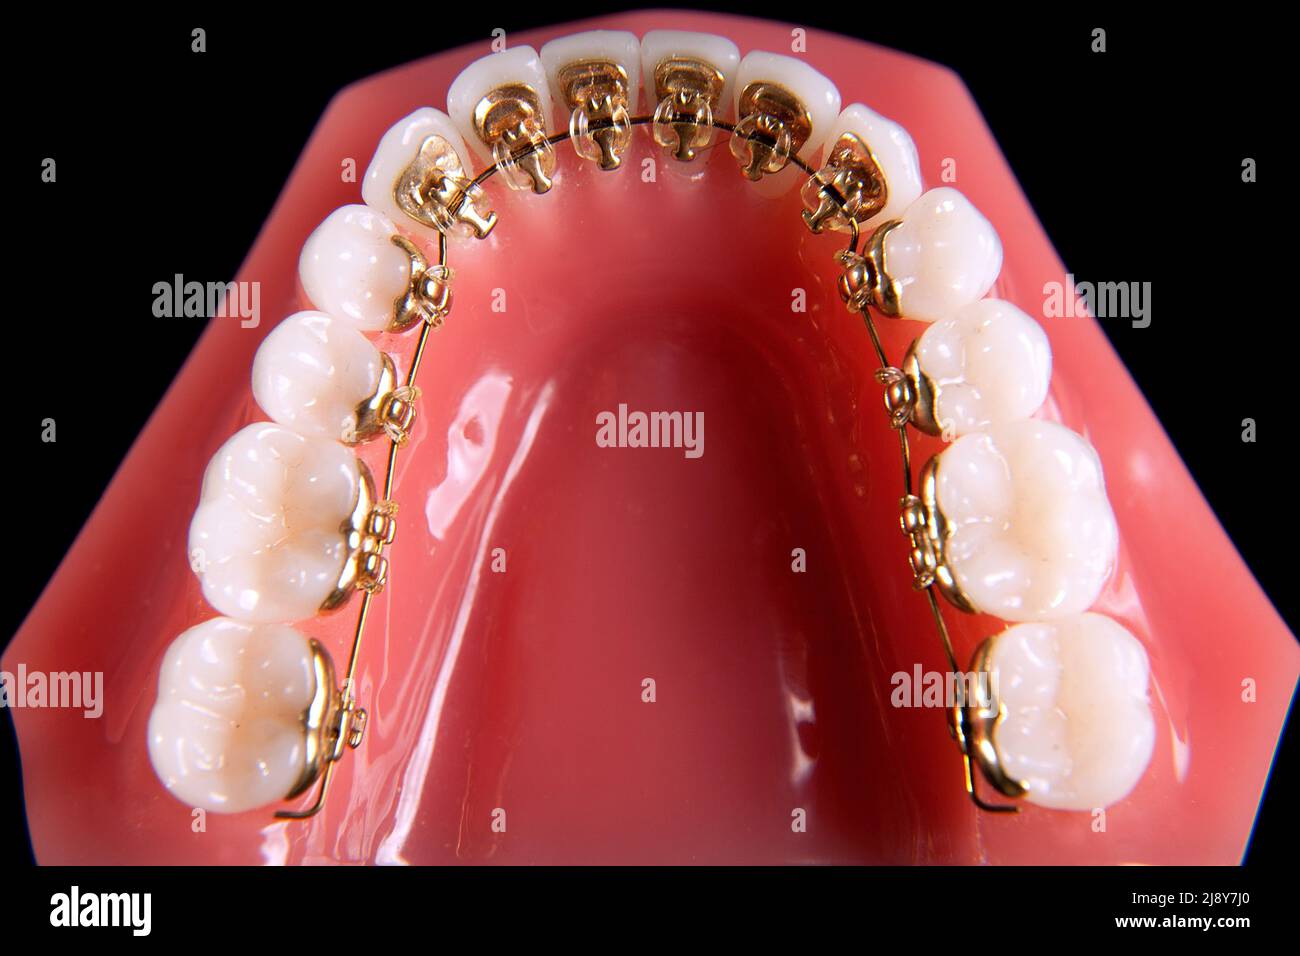 Straighten teeth immagini e fotografie stock ad alta risoluzione - Alamy